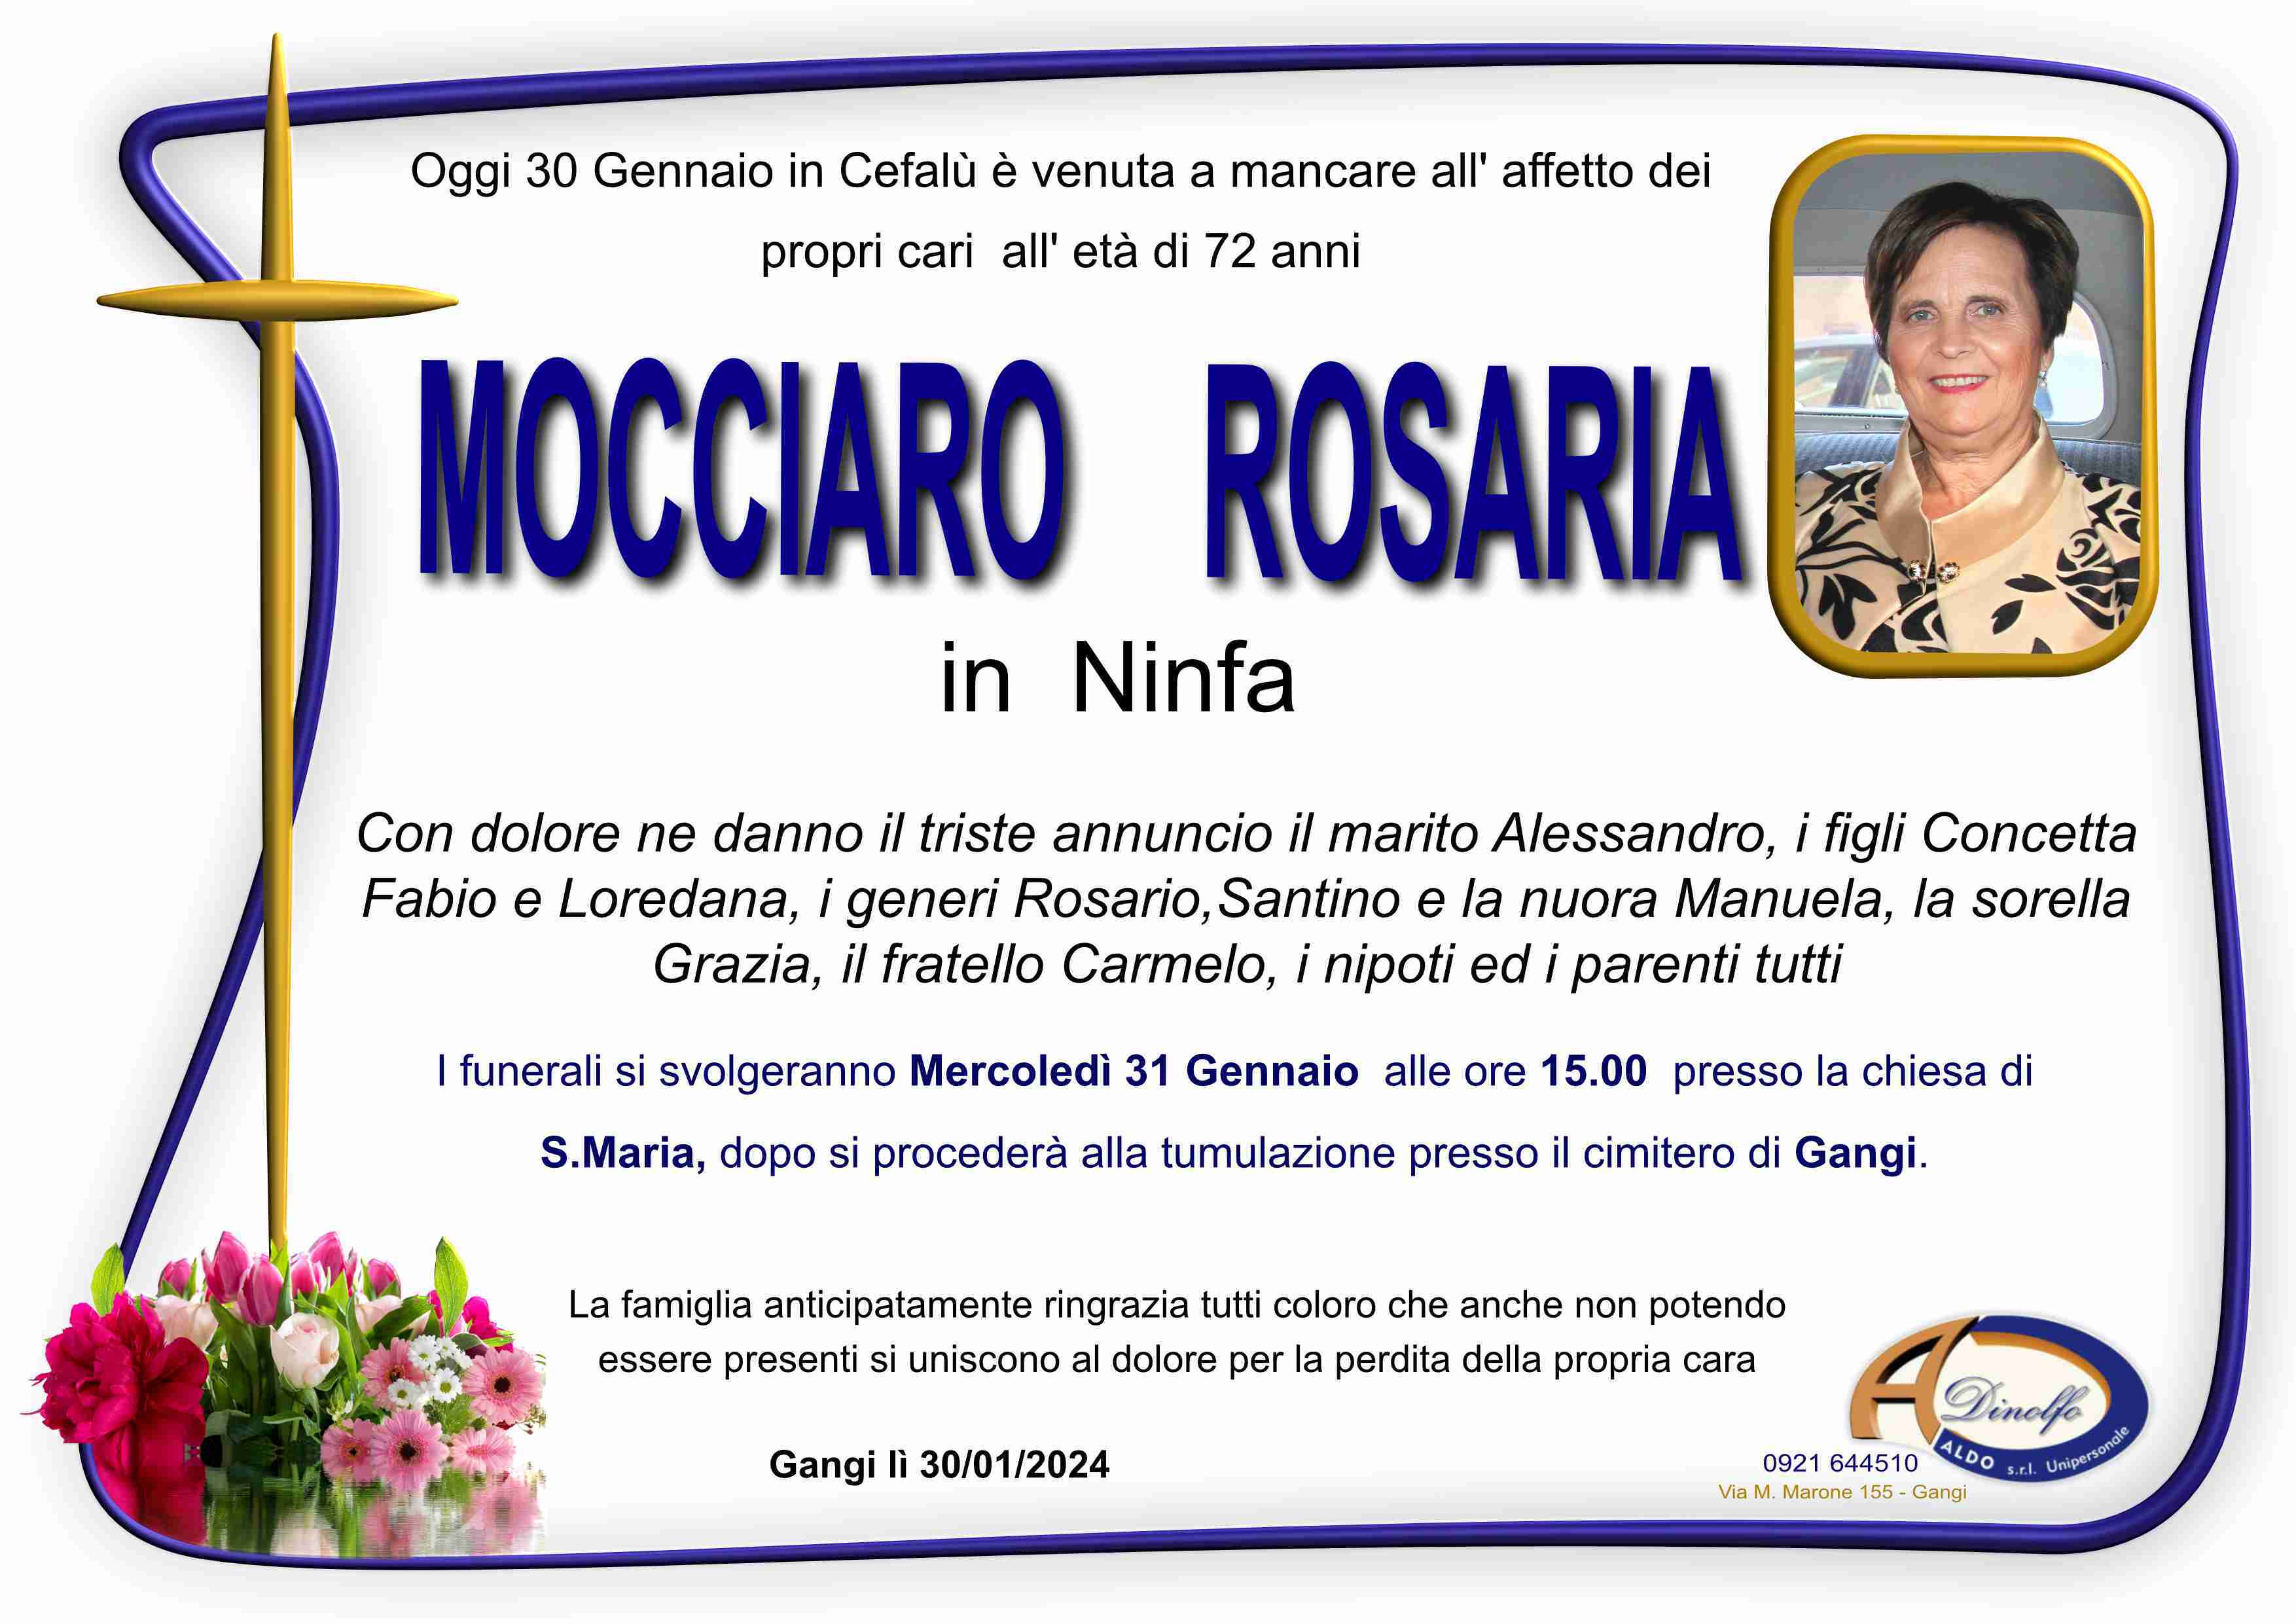 Rosaria Mocciaro